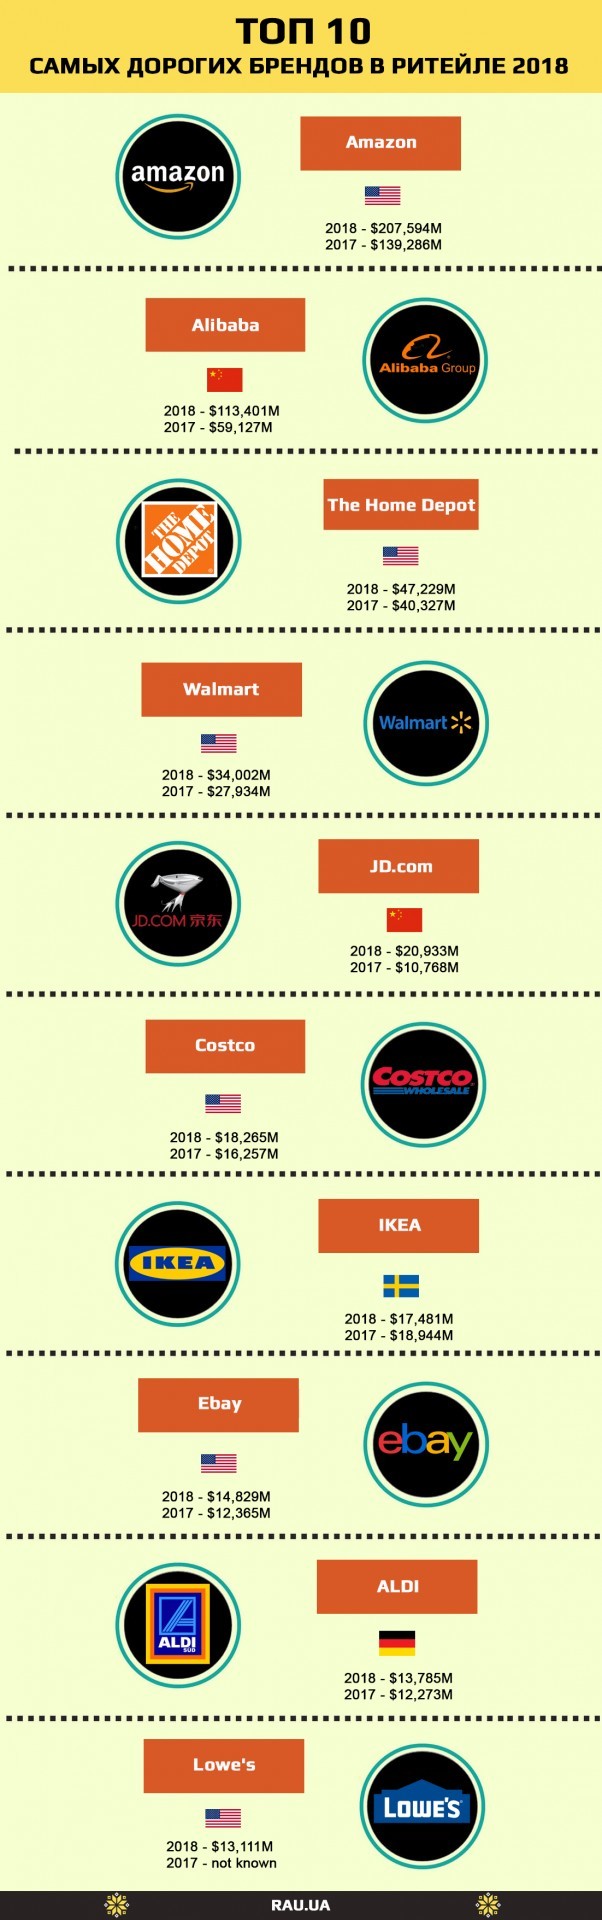  ТОП-10 самых дорогих брендов среди мировых ритейлеров.